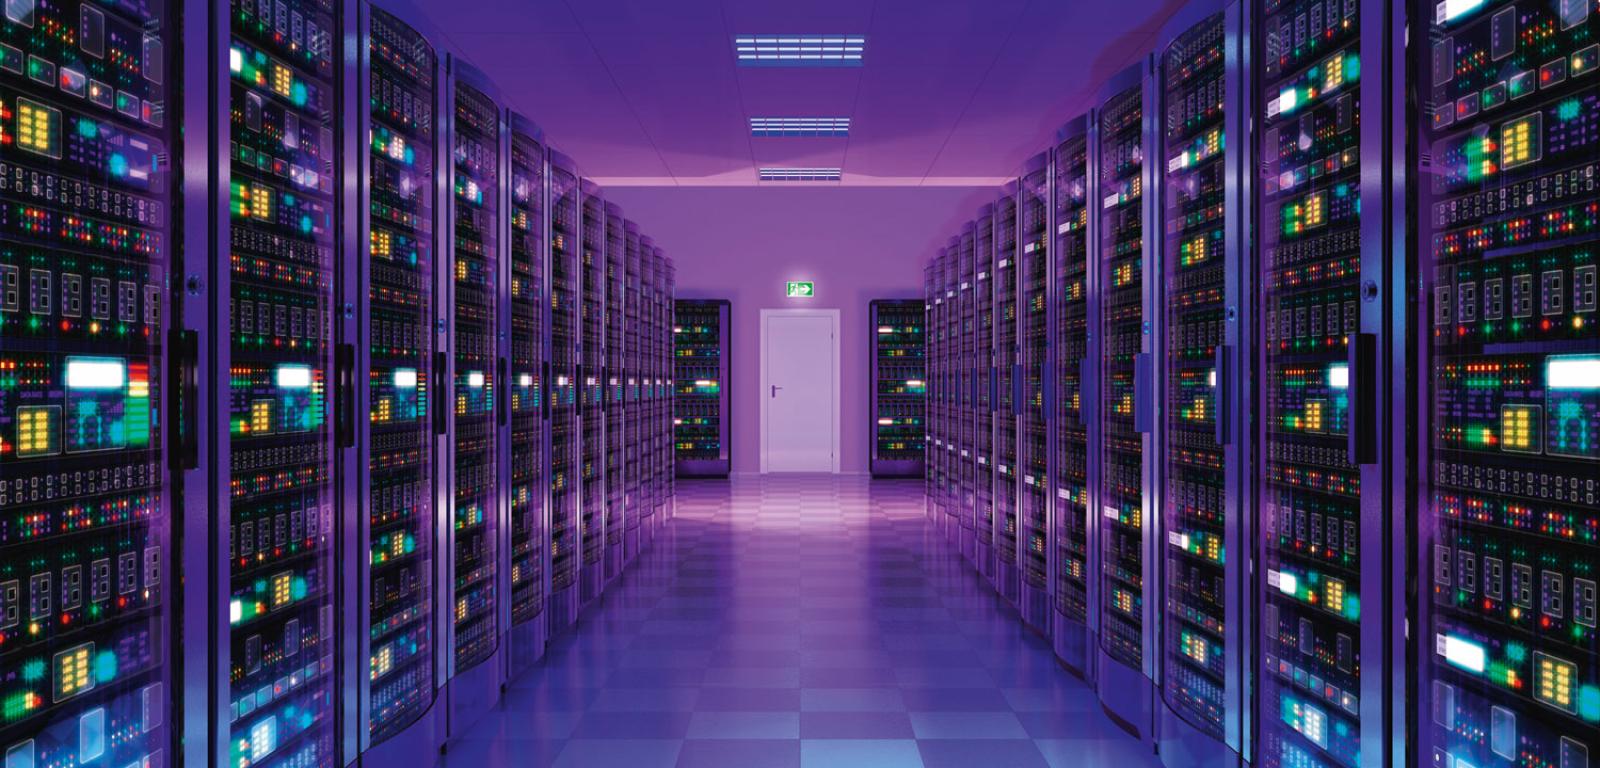 Serwery w centrum danych umieszczone są w rzędach szaf serwerowych.